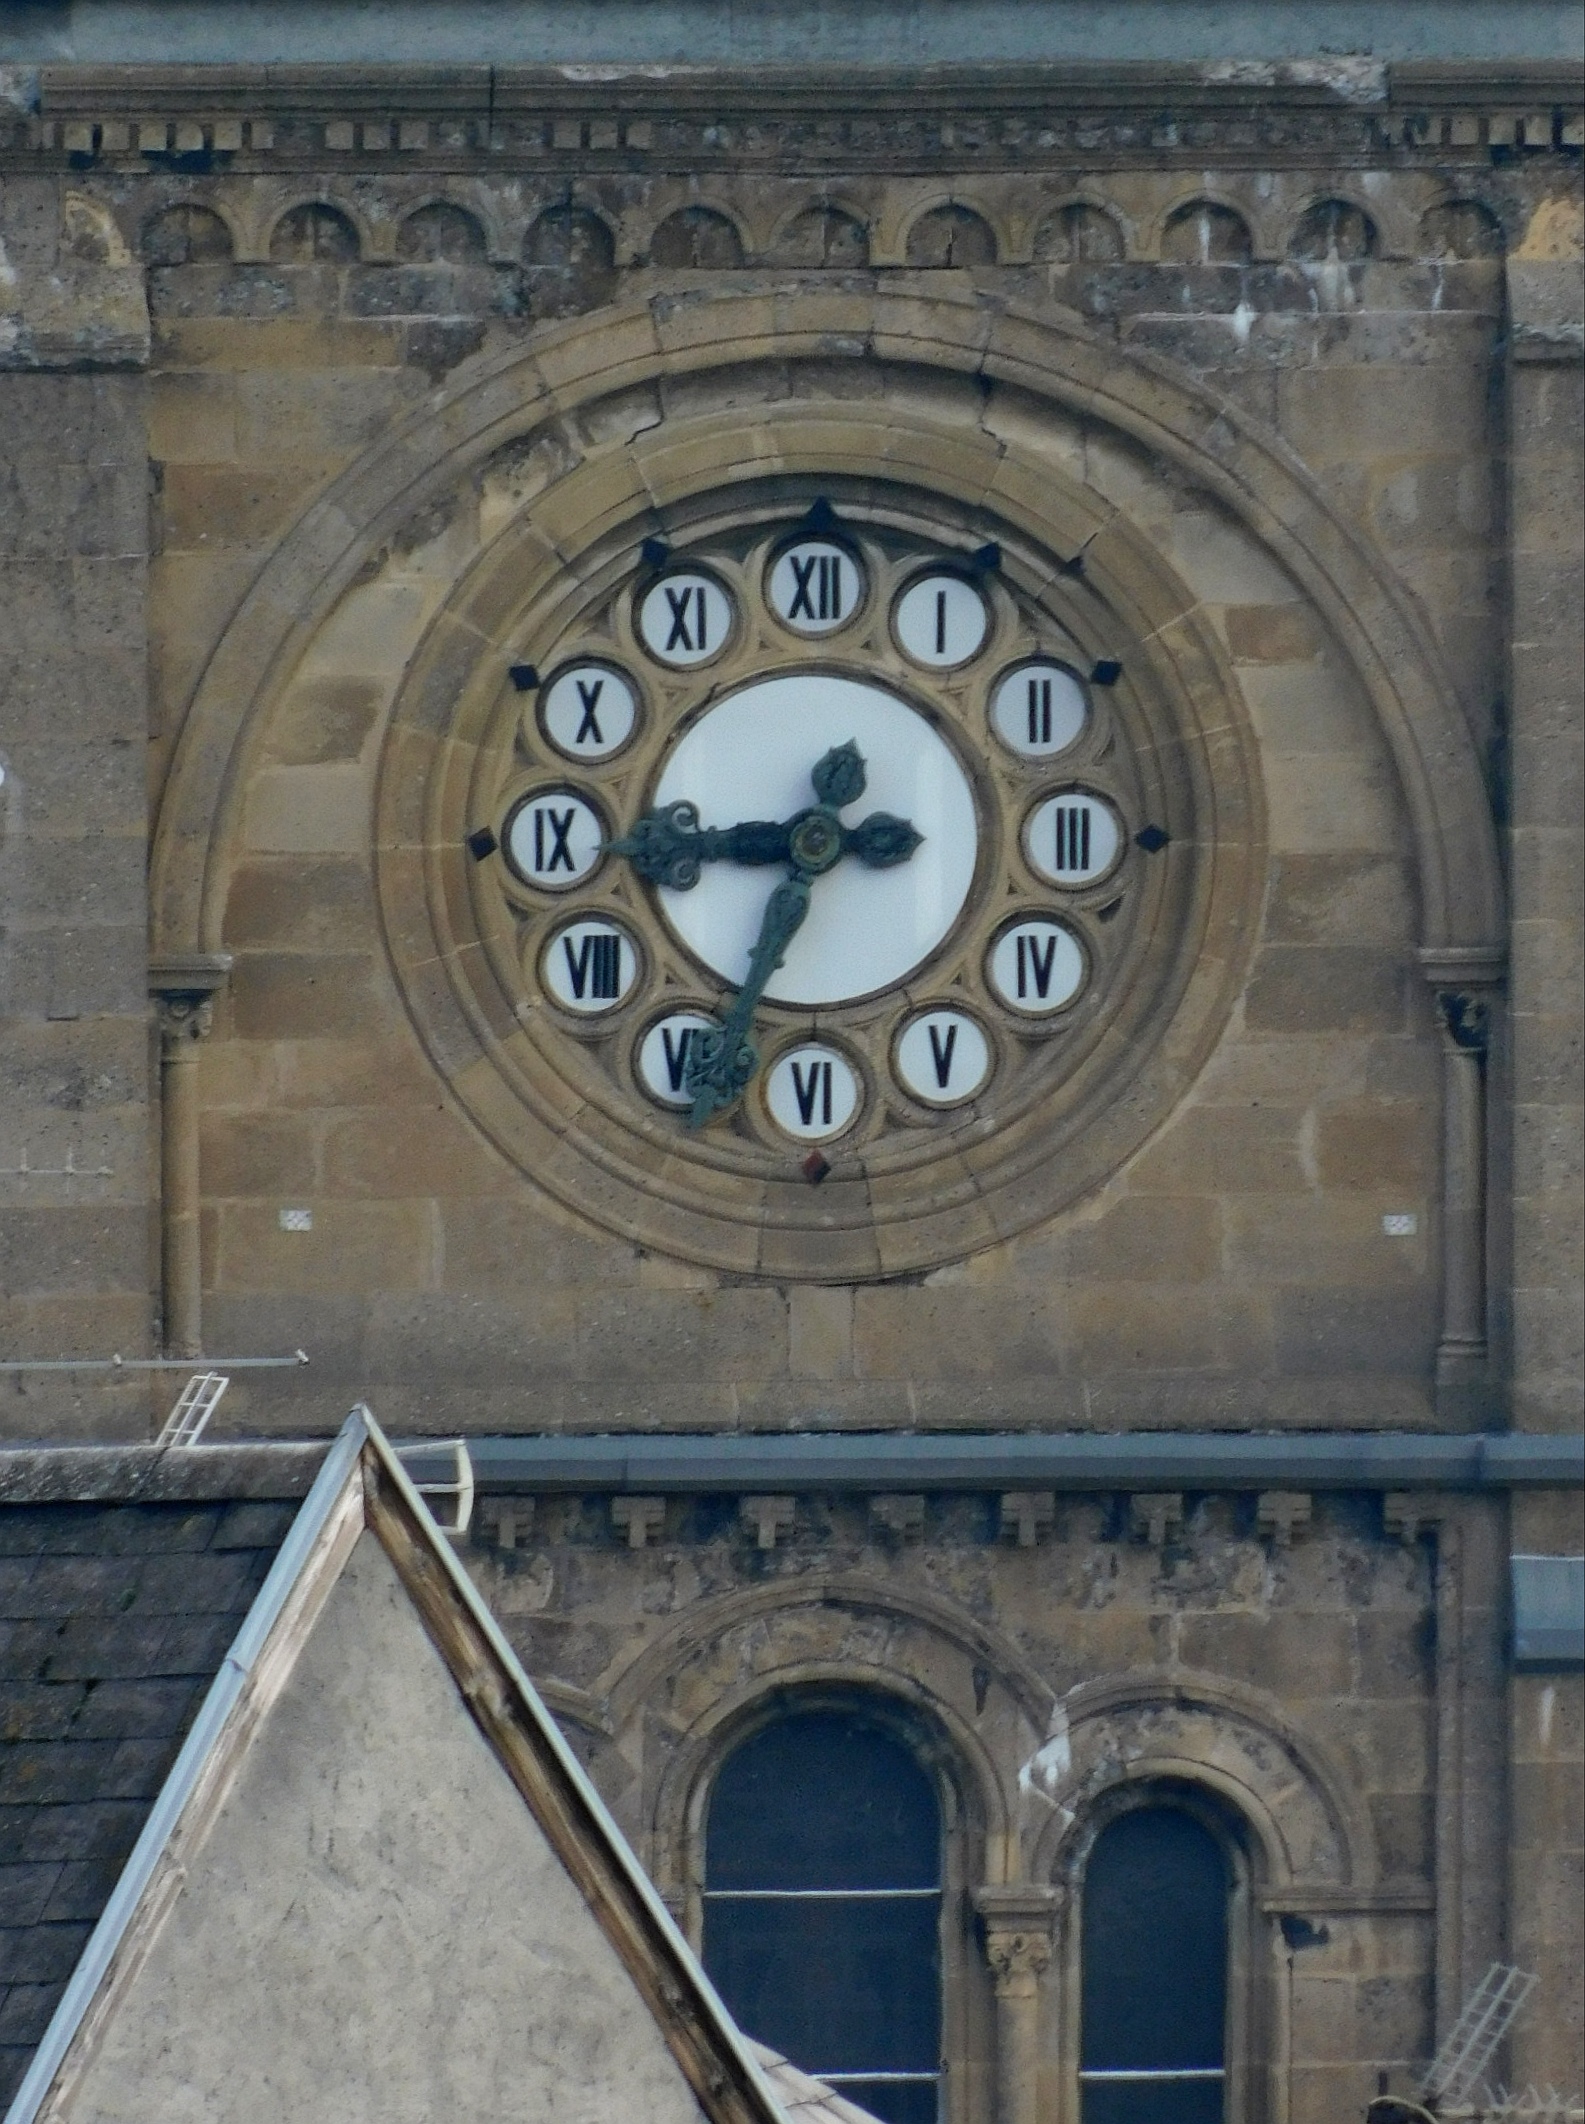 Visite de l'exposition Le temps conté, heure et horloges matheysines